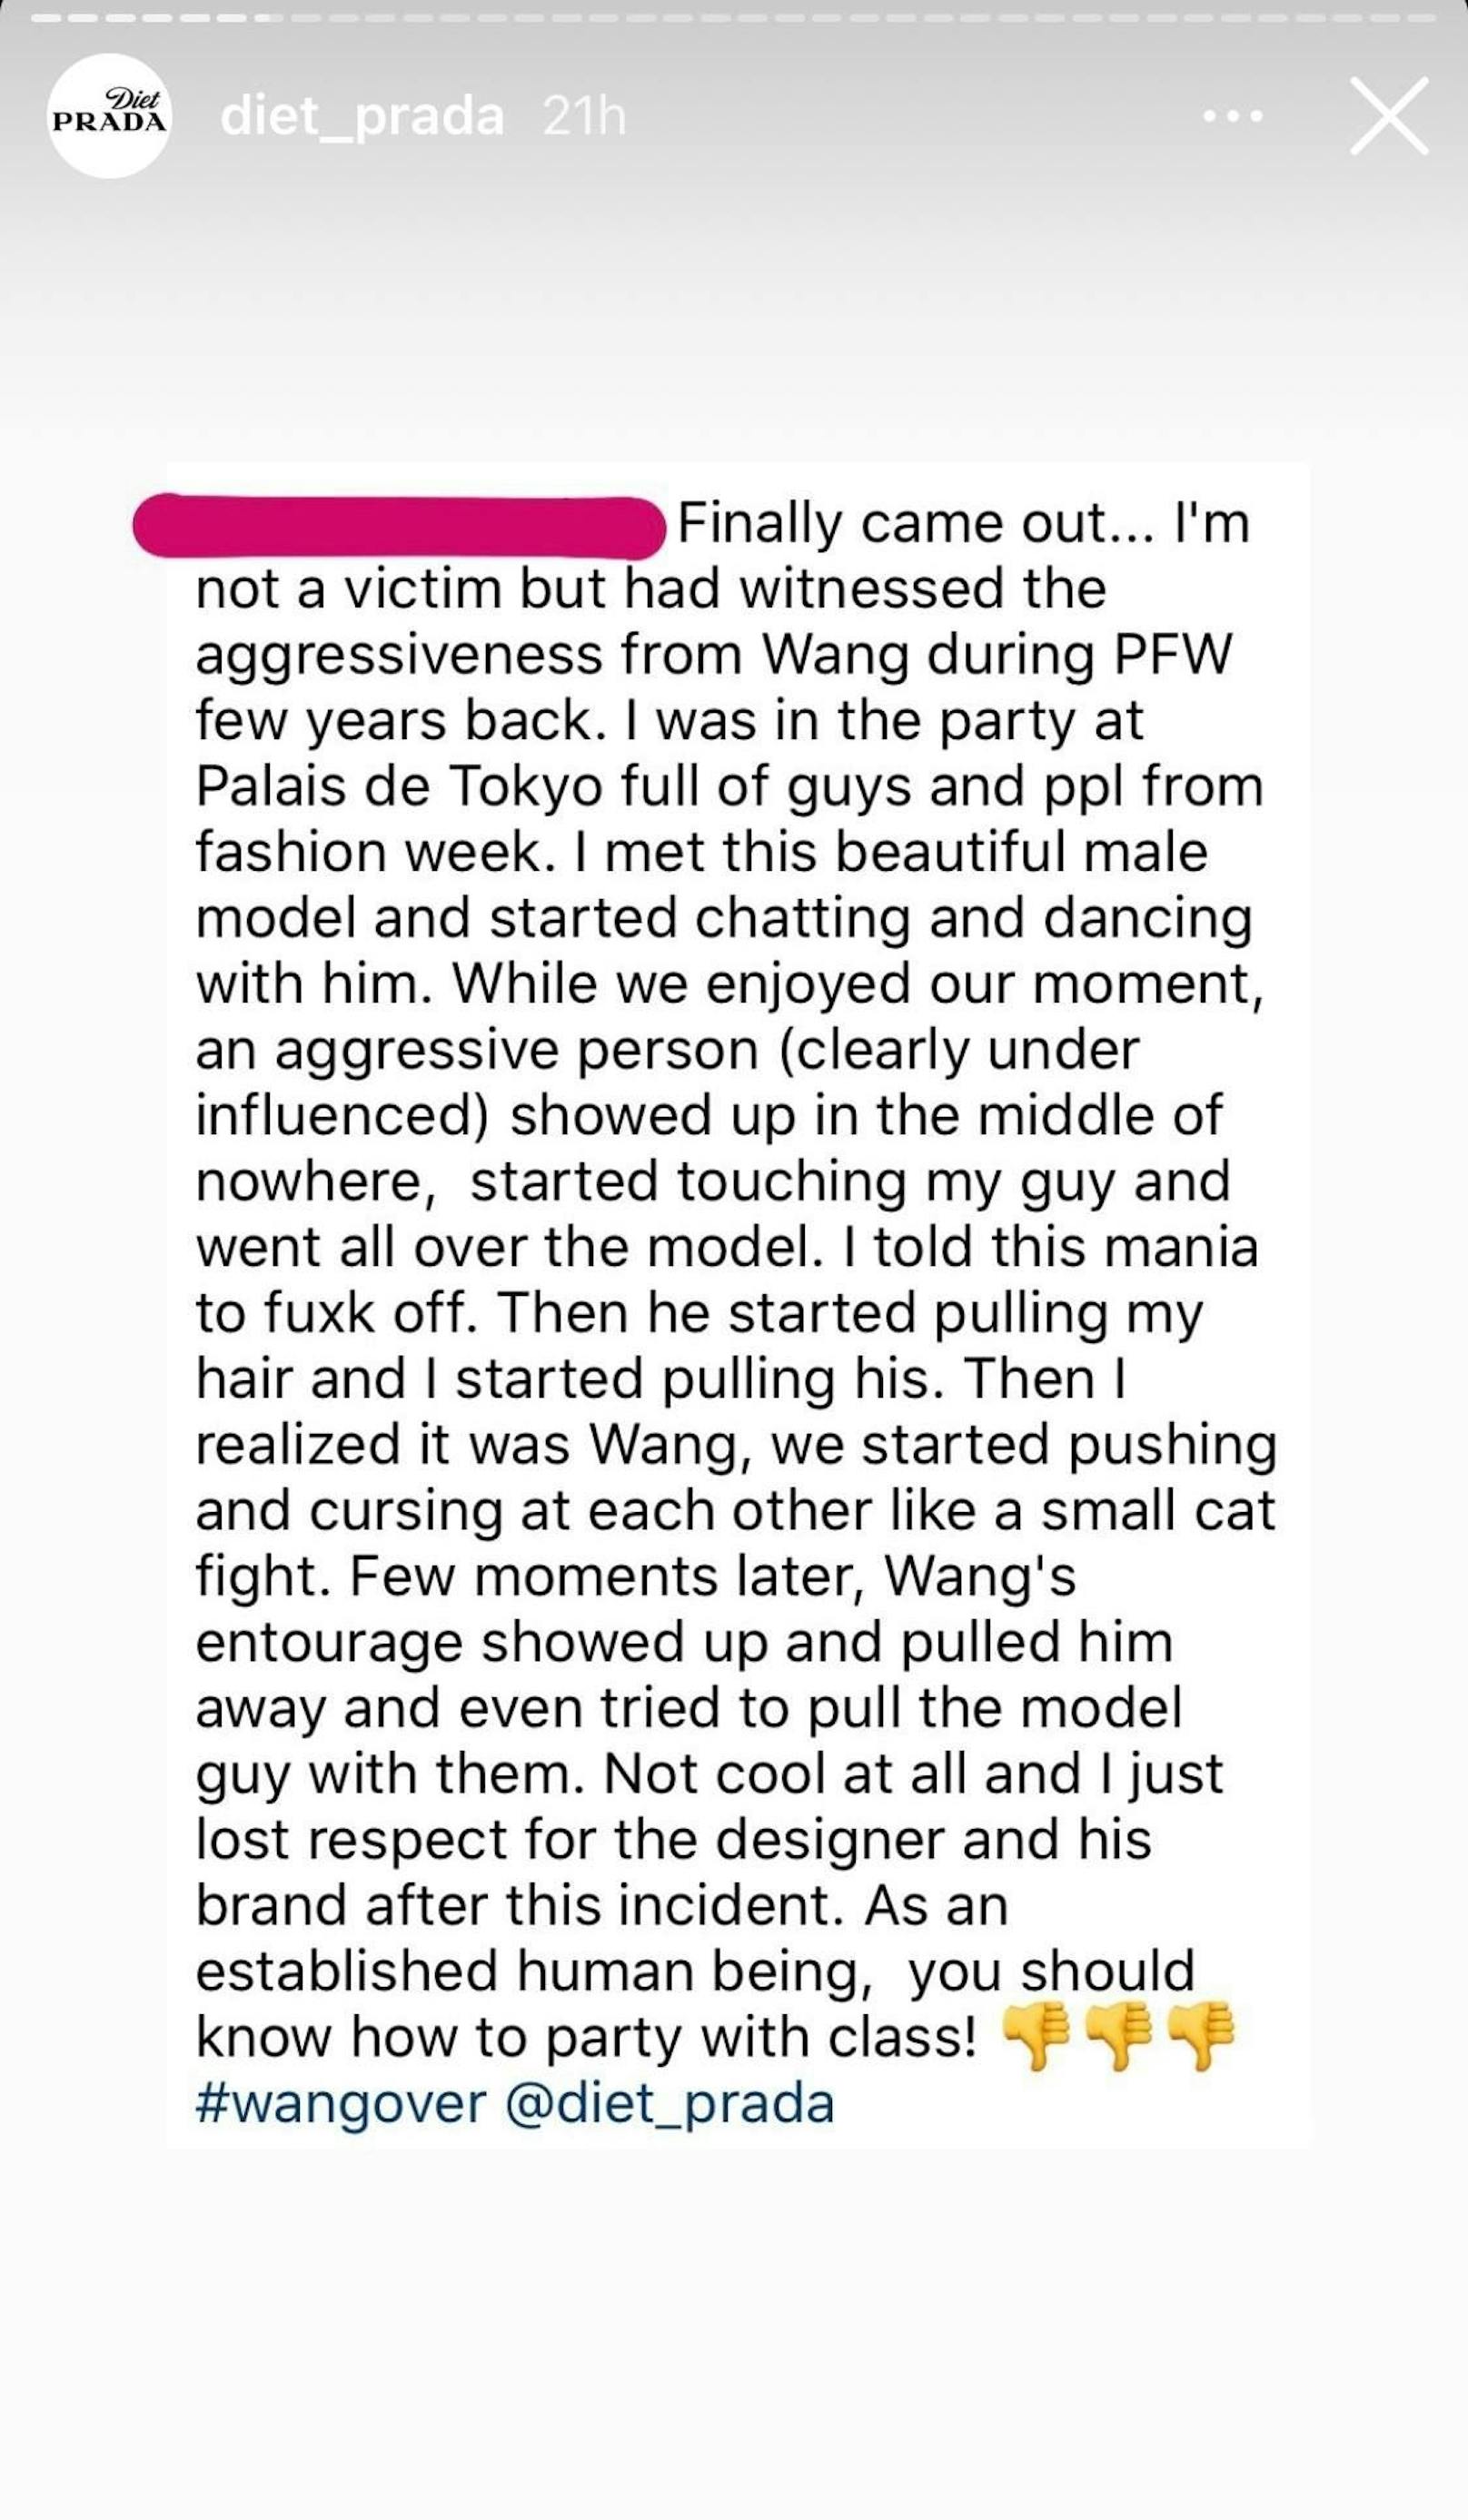 Der bekannte und modekritische Account "Diet Prada" veröffentlichte Nachrichten von Personen, die von Modedesigner Alexander Wang belästigt worden sein sollen.